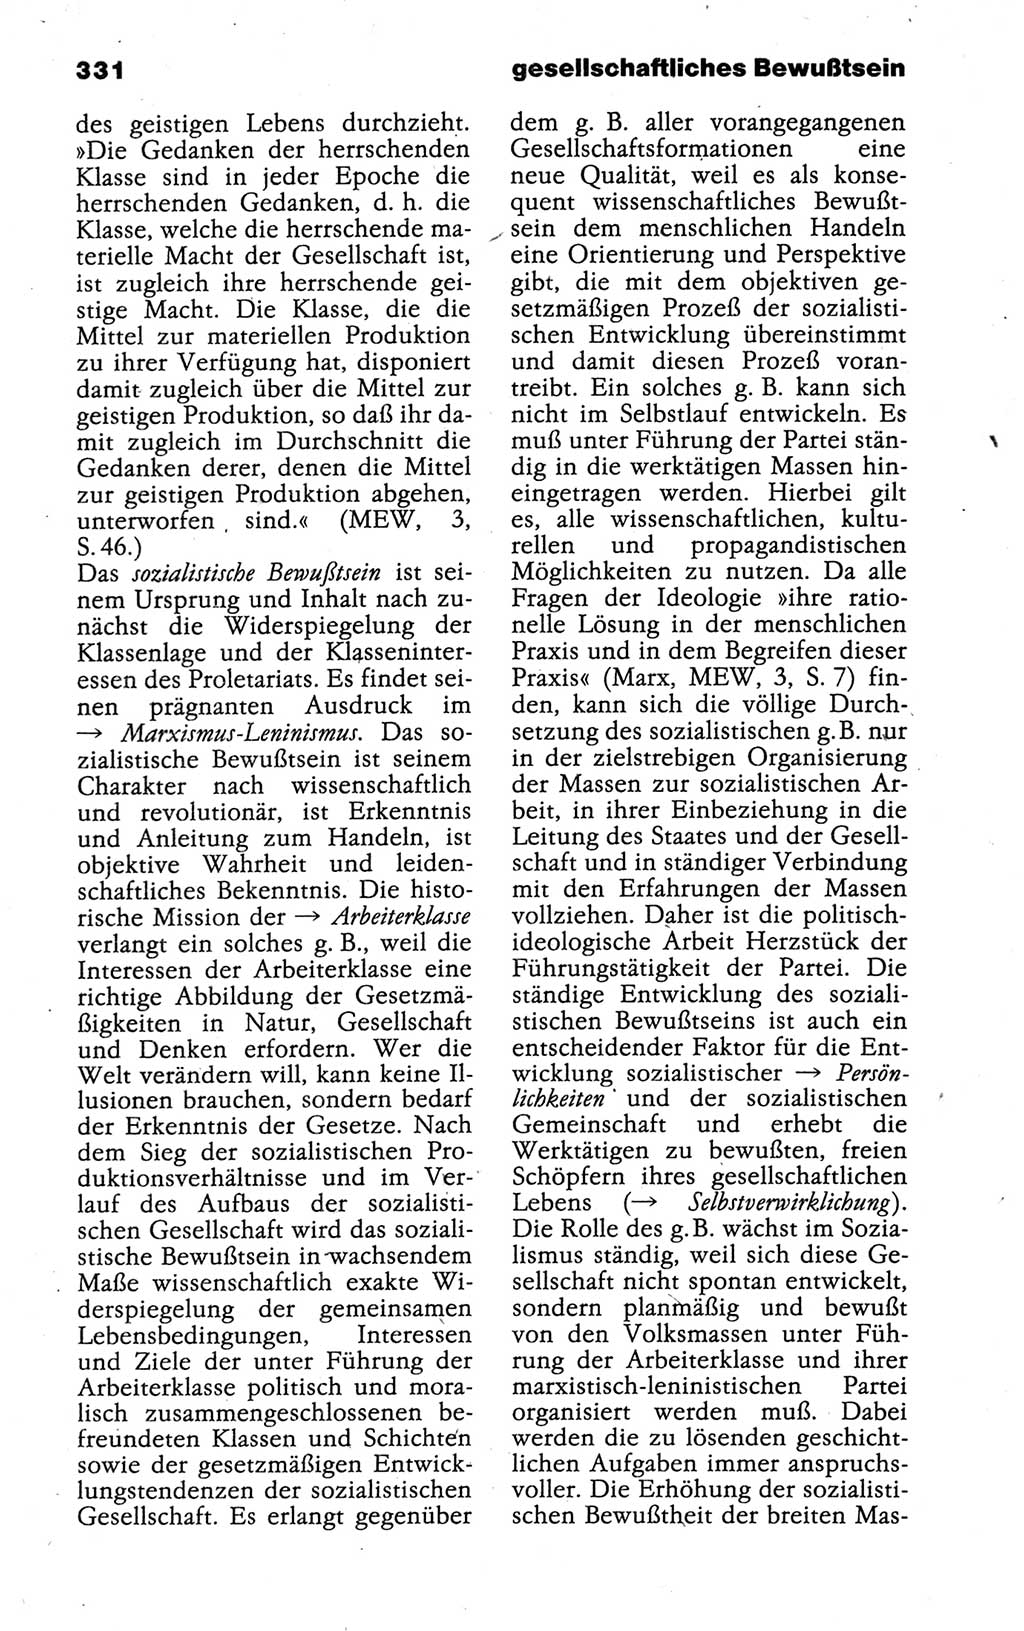 Kleines politisches Wörterbuch [Deutsche Demokratische Republik (DDR)] 1988, Seite 331 (Kl. pol. Wb. DDR 1988, S. 331)